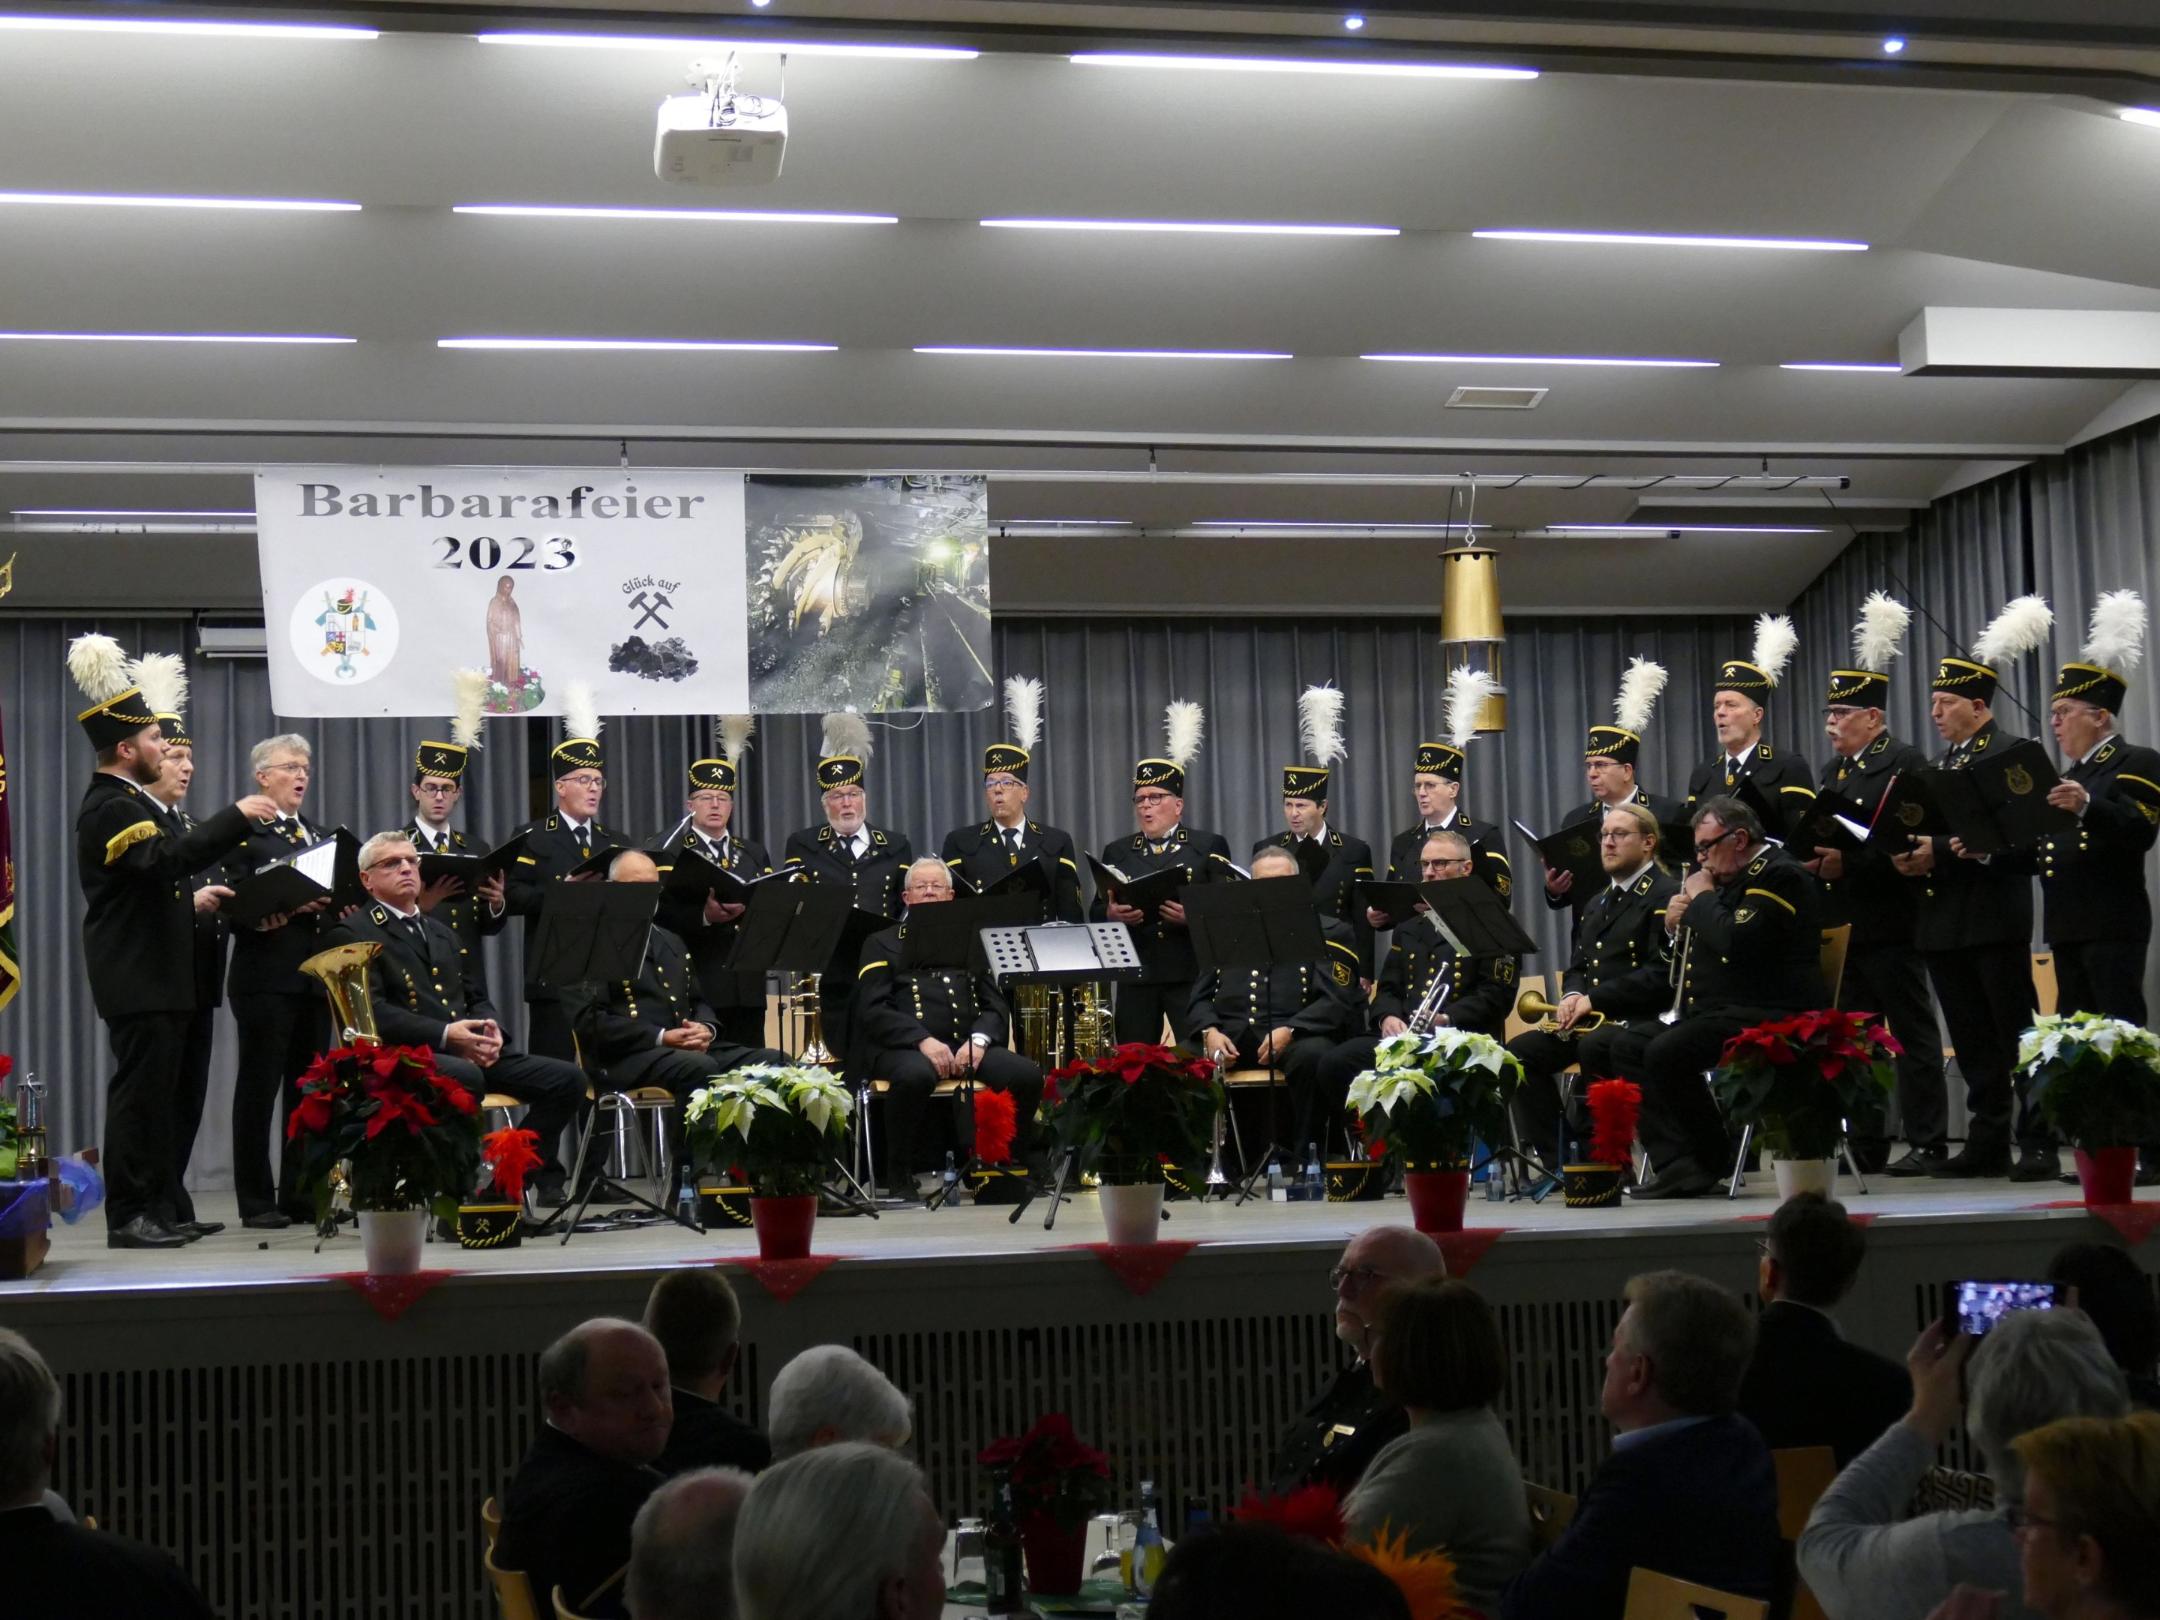 Saarknappenchor und das Brass Ensemble der Bergkapelle spielten bei der Zentralen Barbarafeier.